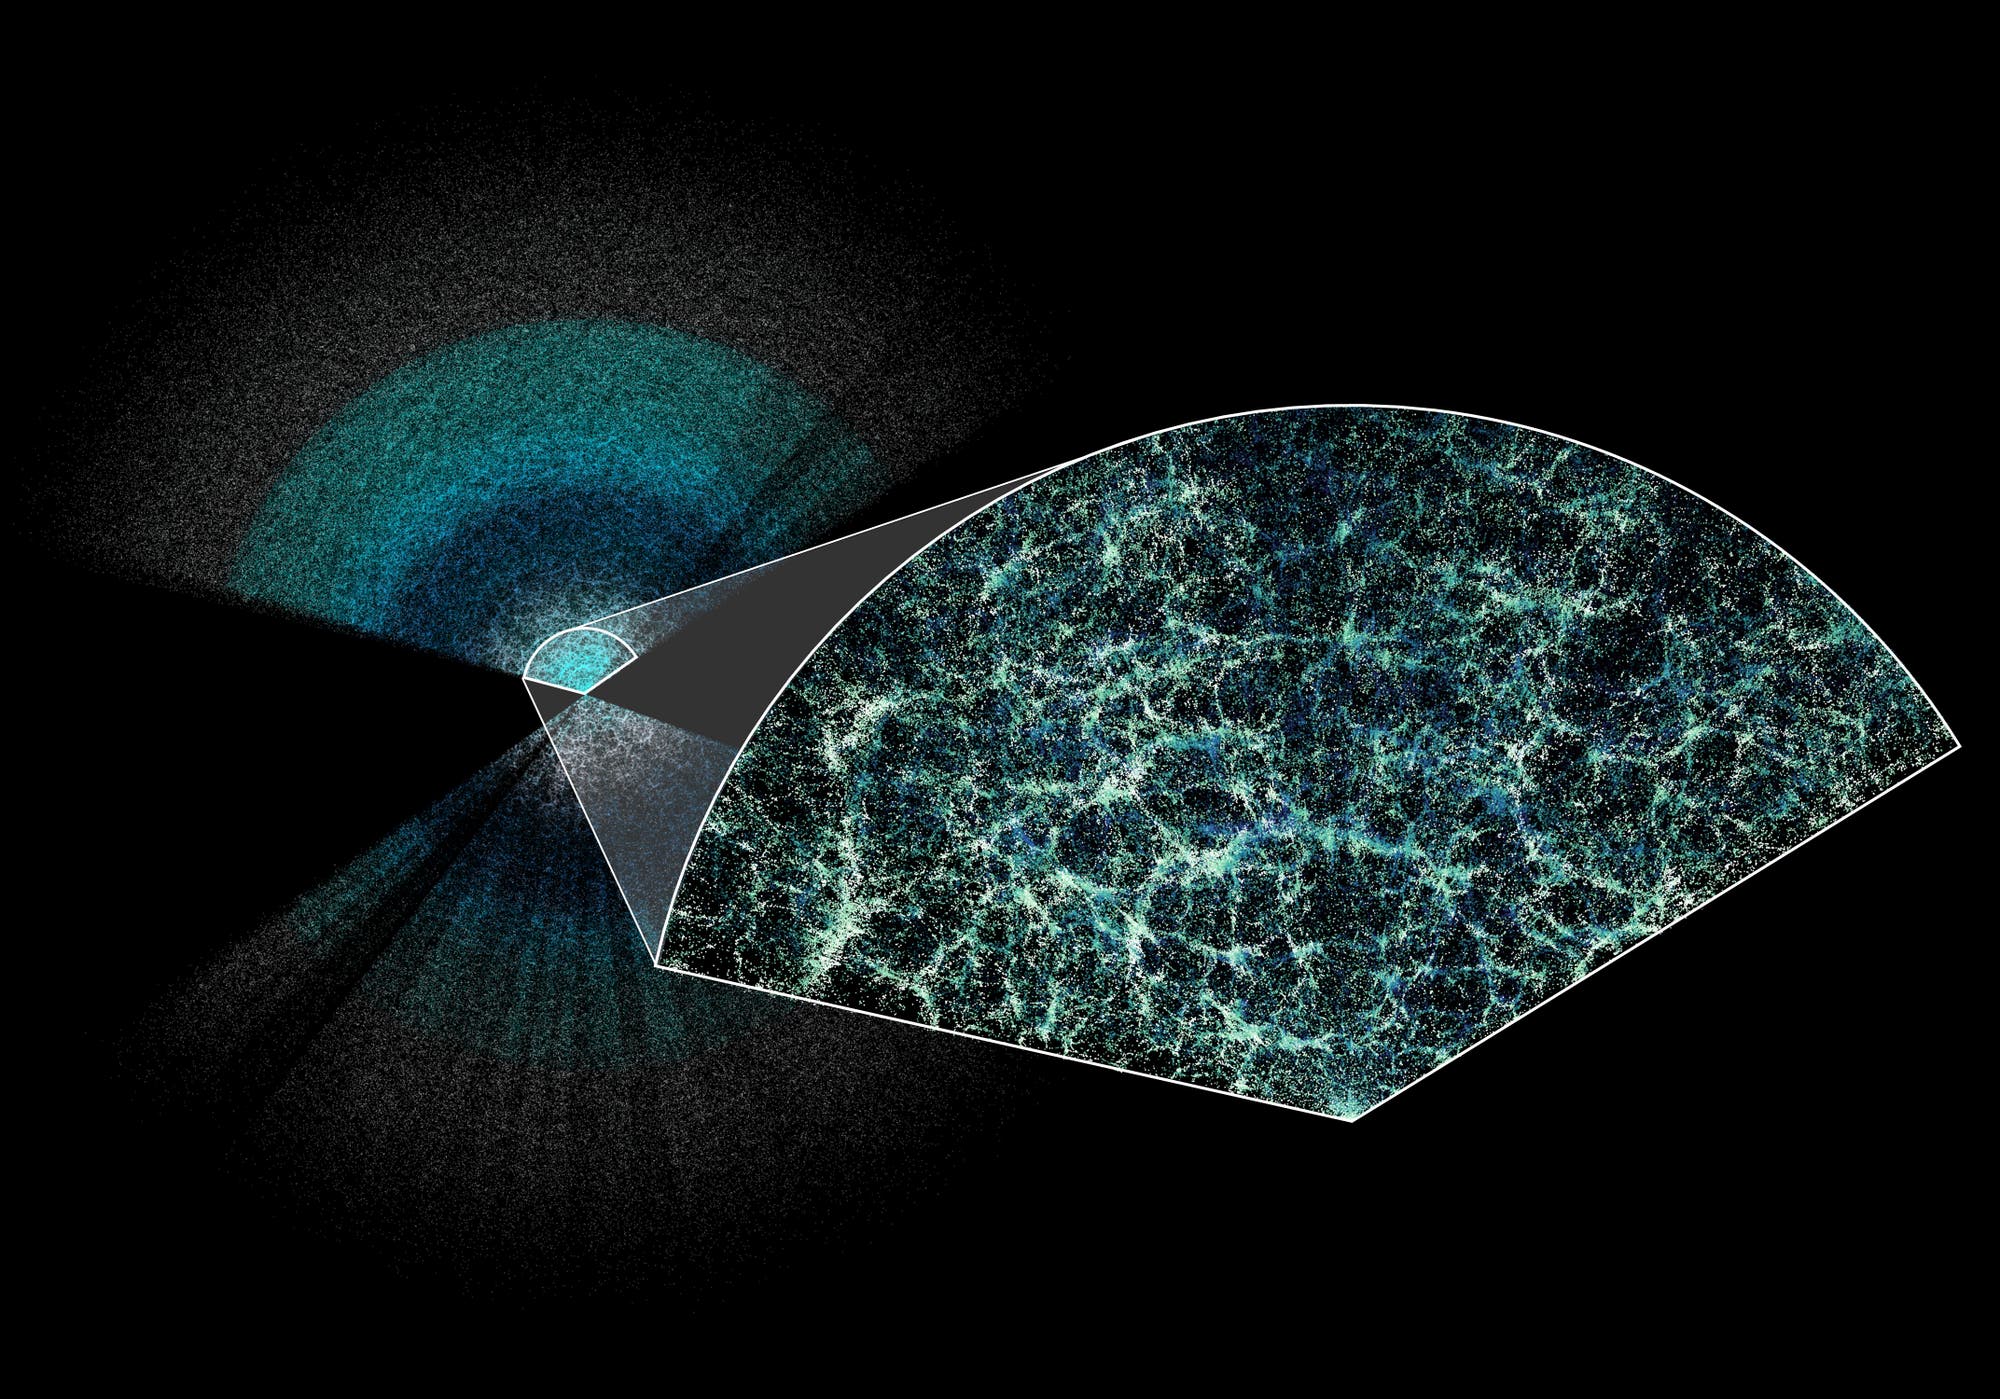 Das Dark Energy Spectroscopic Instrument (DESI) hat die bisher größte 3-D-Karte unseres Universums erstellt. Dieser Ausschnitt zeigt die Galaxien, die im ersten Jahr der fünfjährigen DESI-Durchmusterung kartiert wurden. Die Erde befindet sich in der Mitte dieses dünnen Ausschnitts der Gesamtkarte. In dem vergrößerten Ausschnitt ist die zu Grunde liegende Struktur der Materie in unserem Universum gut zu erkennen.  